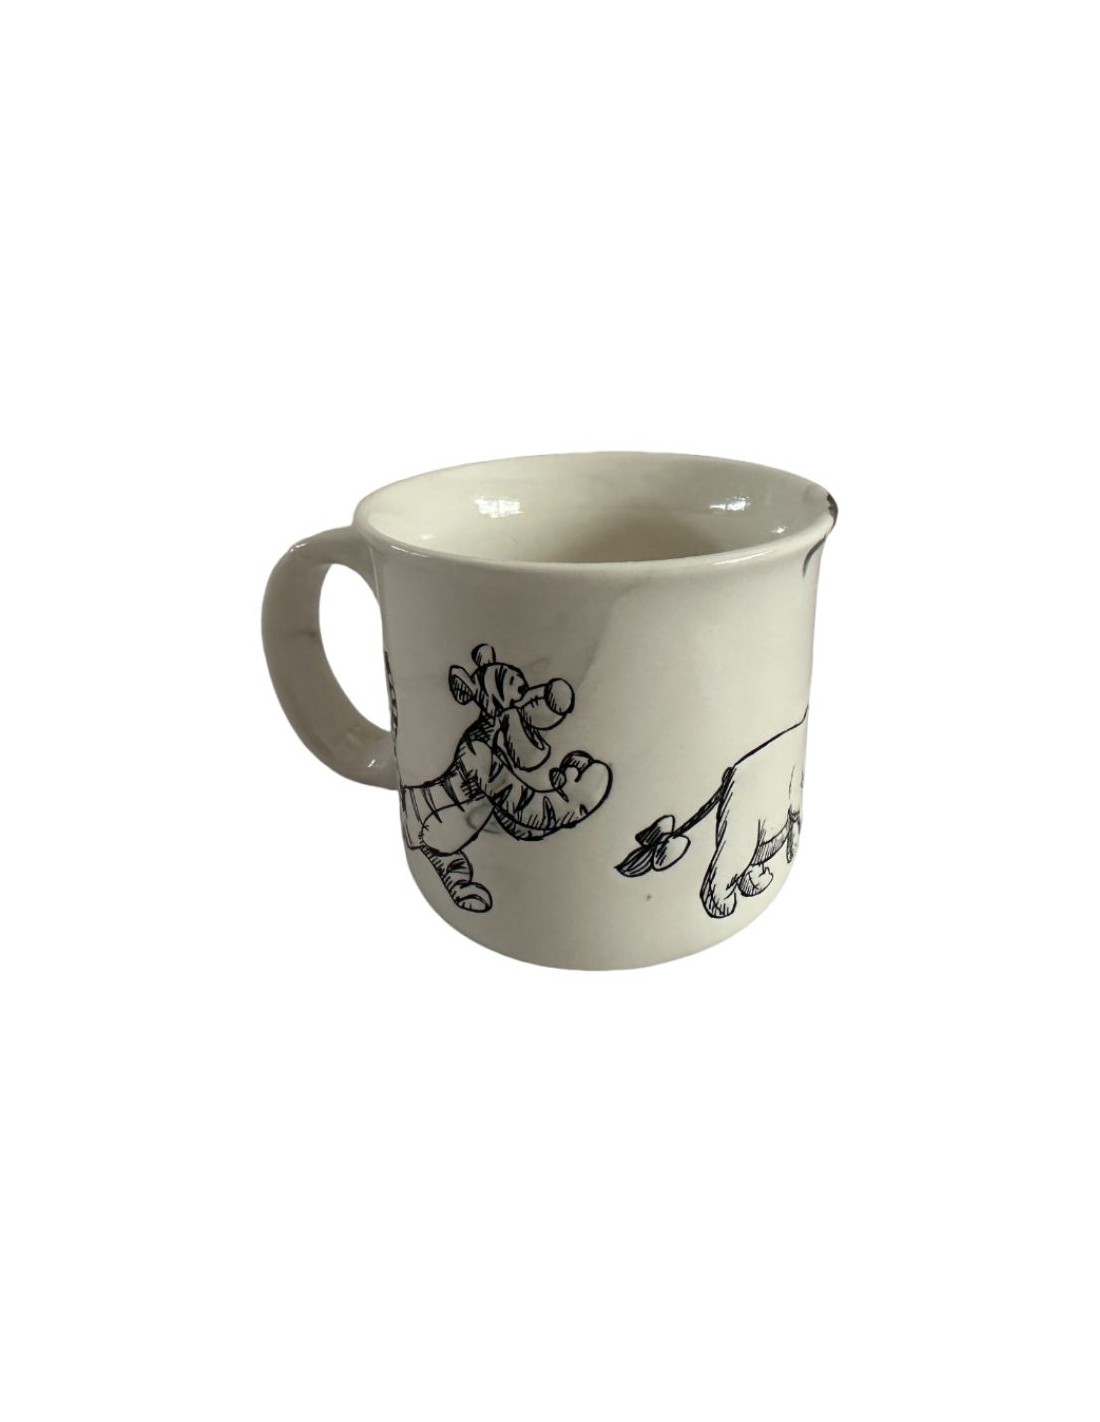 iTOMO-Cup - La première tasse connectée en porcelaine